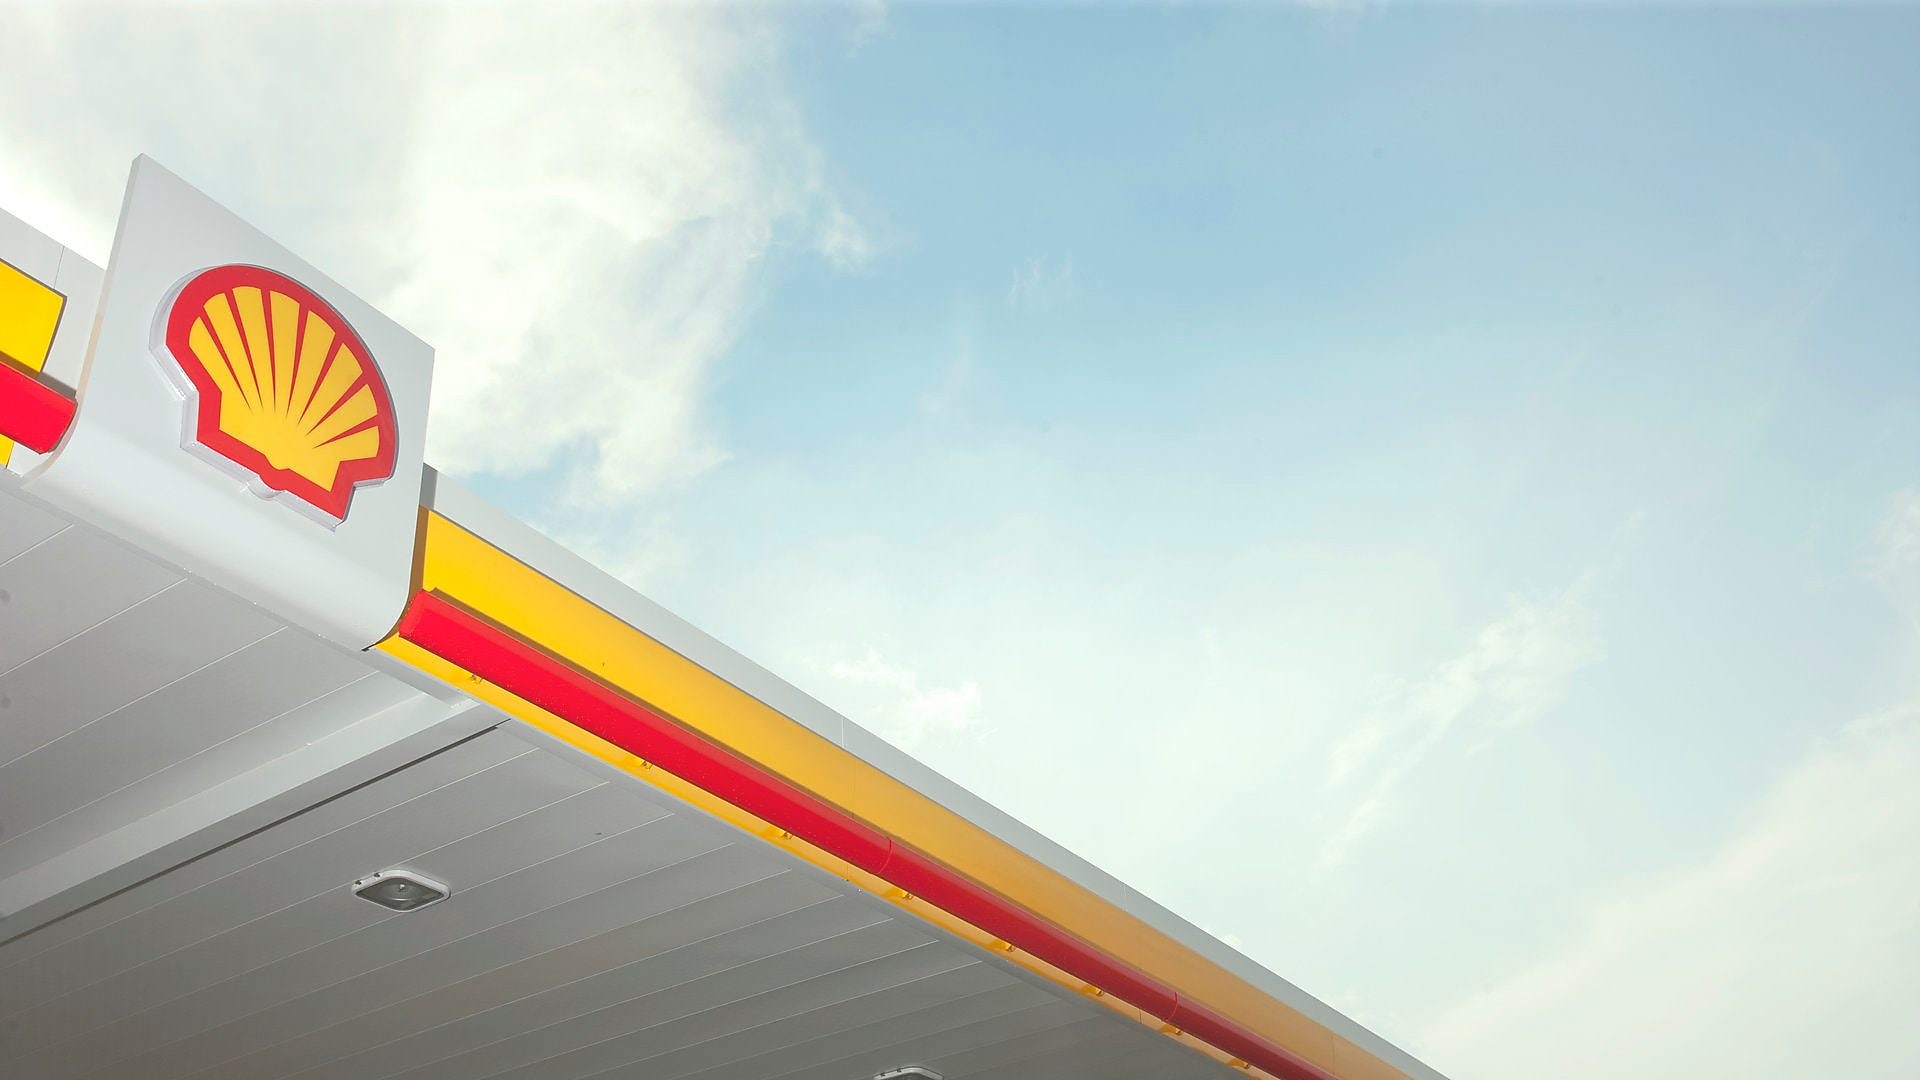 Shell, dünyada enerji sektörünün en değerli markası seçildi